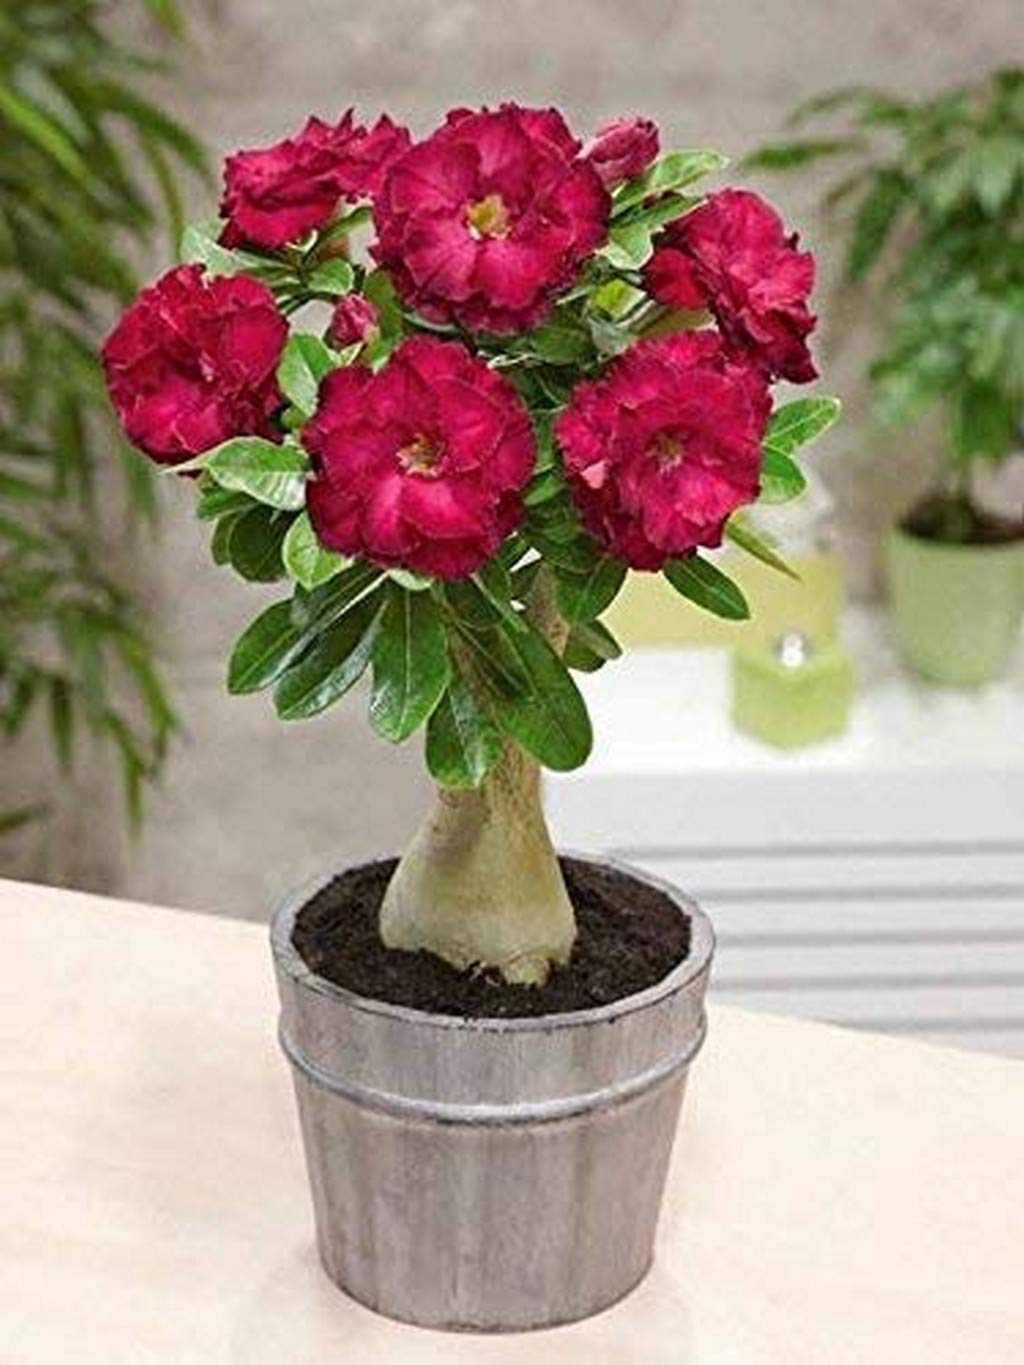 Bonsai Live Plant Desert Rose Flower Adenium Obesum Office Indoor (Desert Rose) Impala Lily (1 Live Bonsai Plant) (PLANT-93-ADENIUM857ll@)